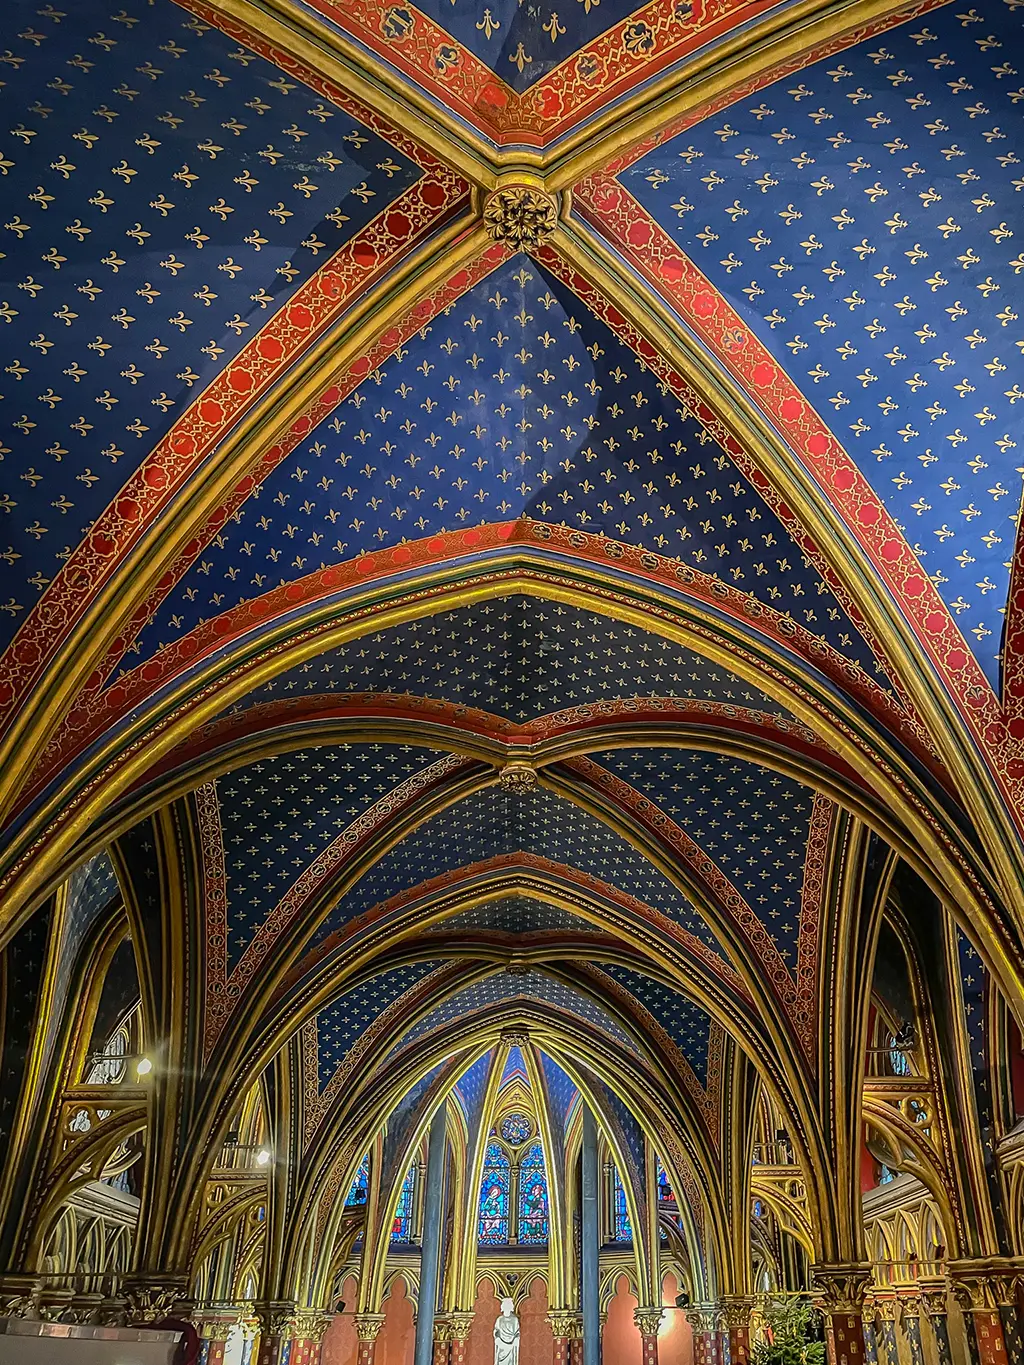 Visiter la Sainte-Chapelle de Paris, un joyau du gothique flamboyant